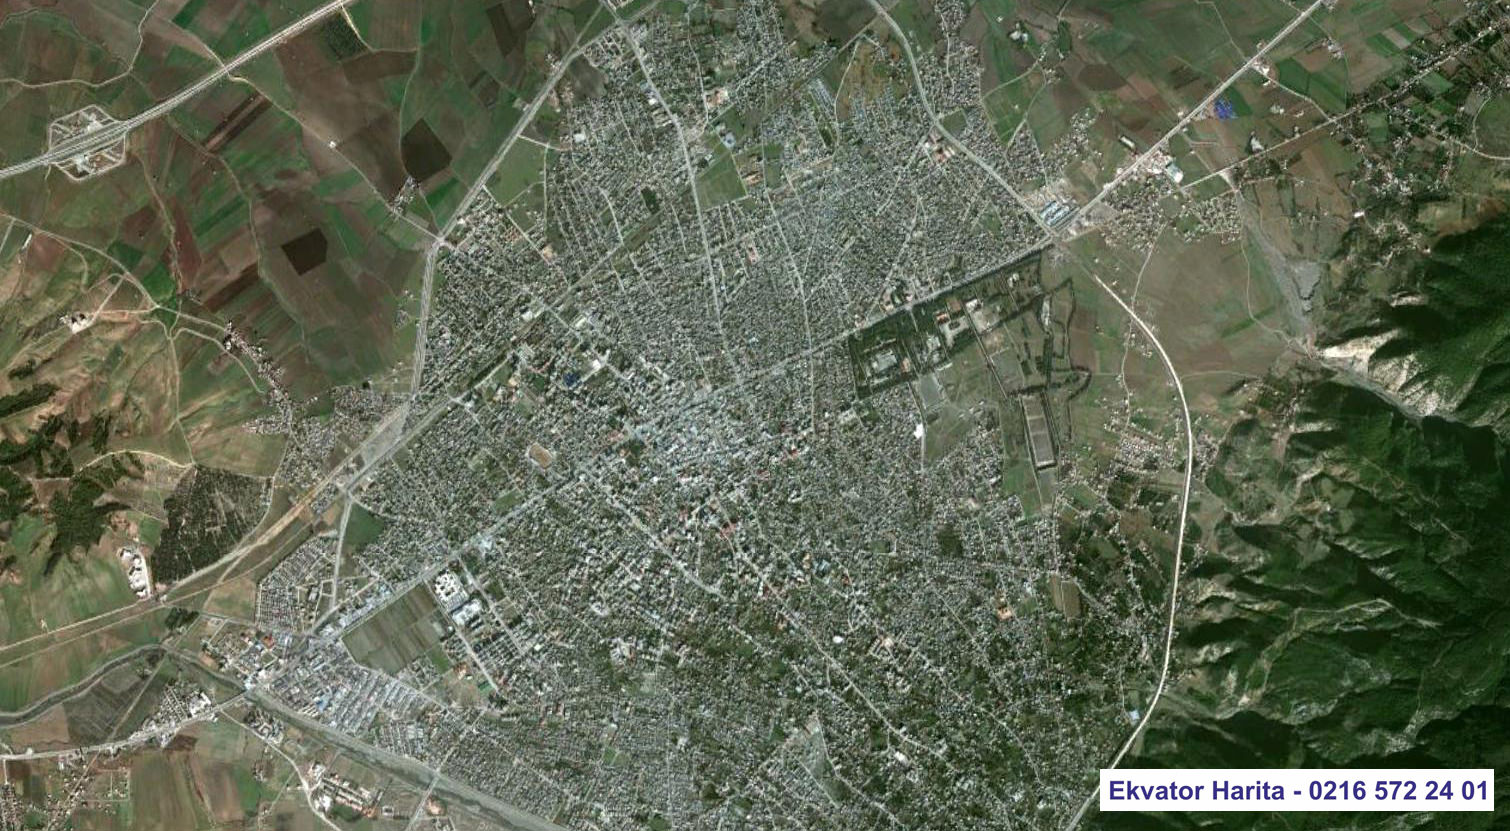 Osmaniye Uydu Haritası Örnek Fotoğrafı